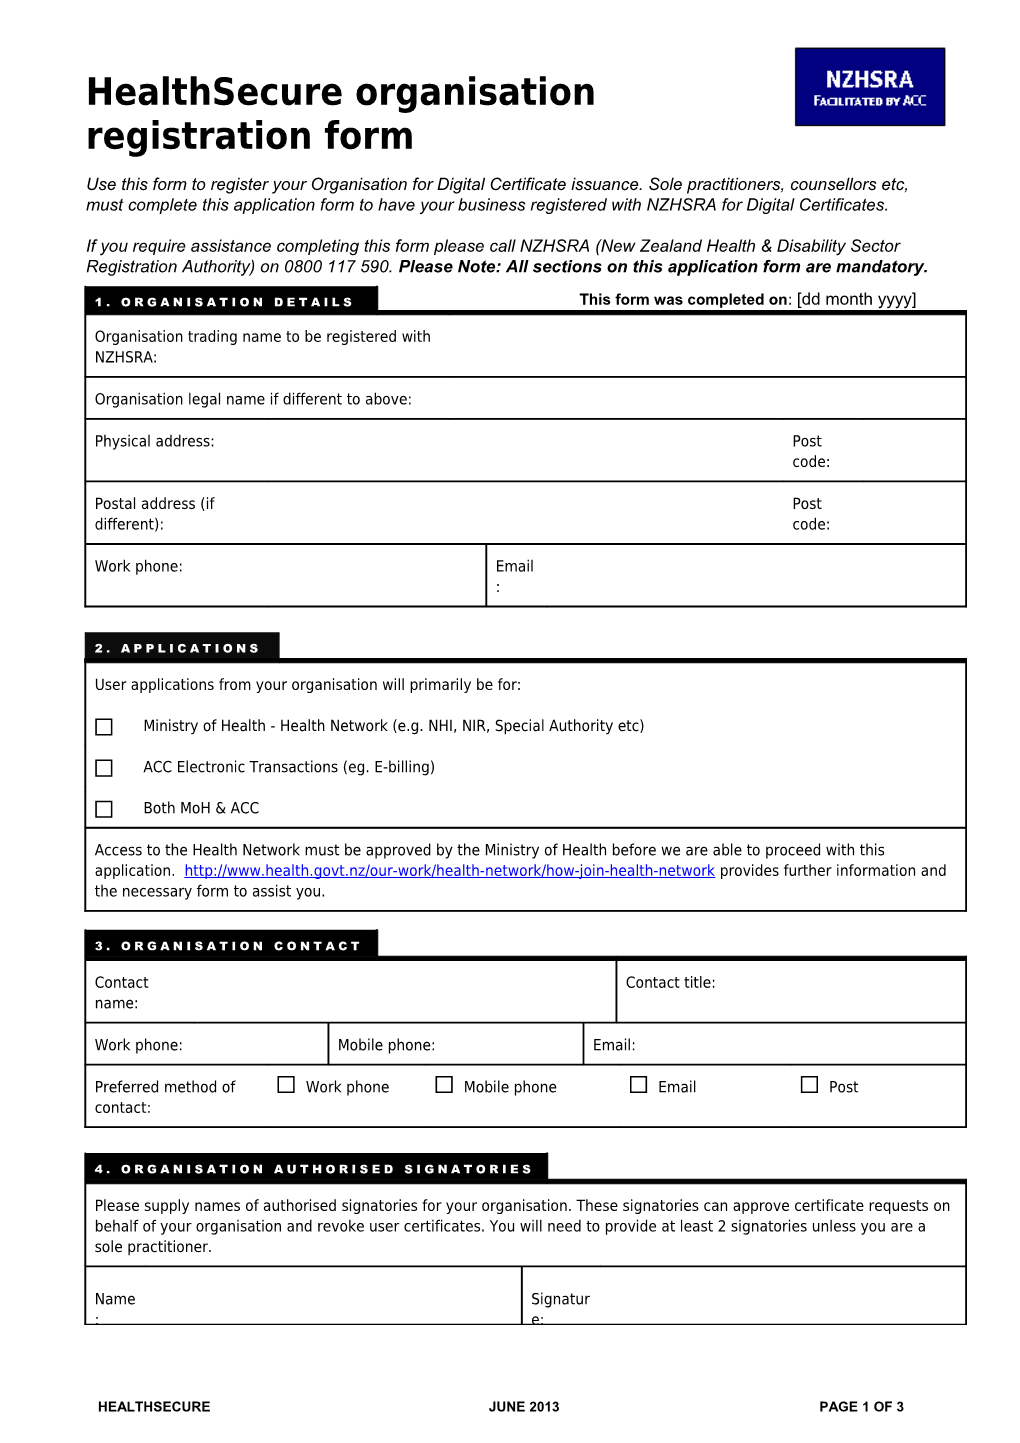 Healthsecure Organisation Registration Form